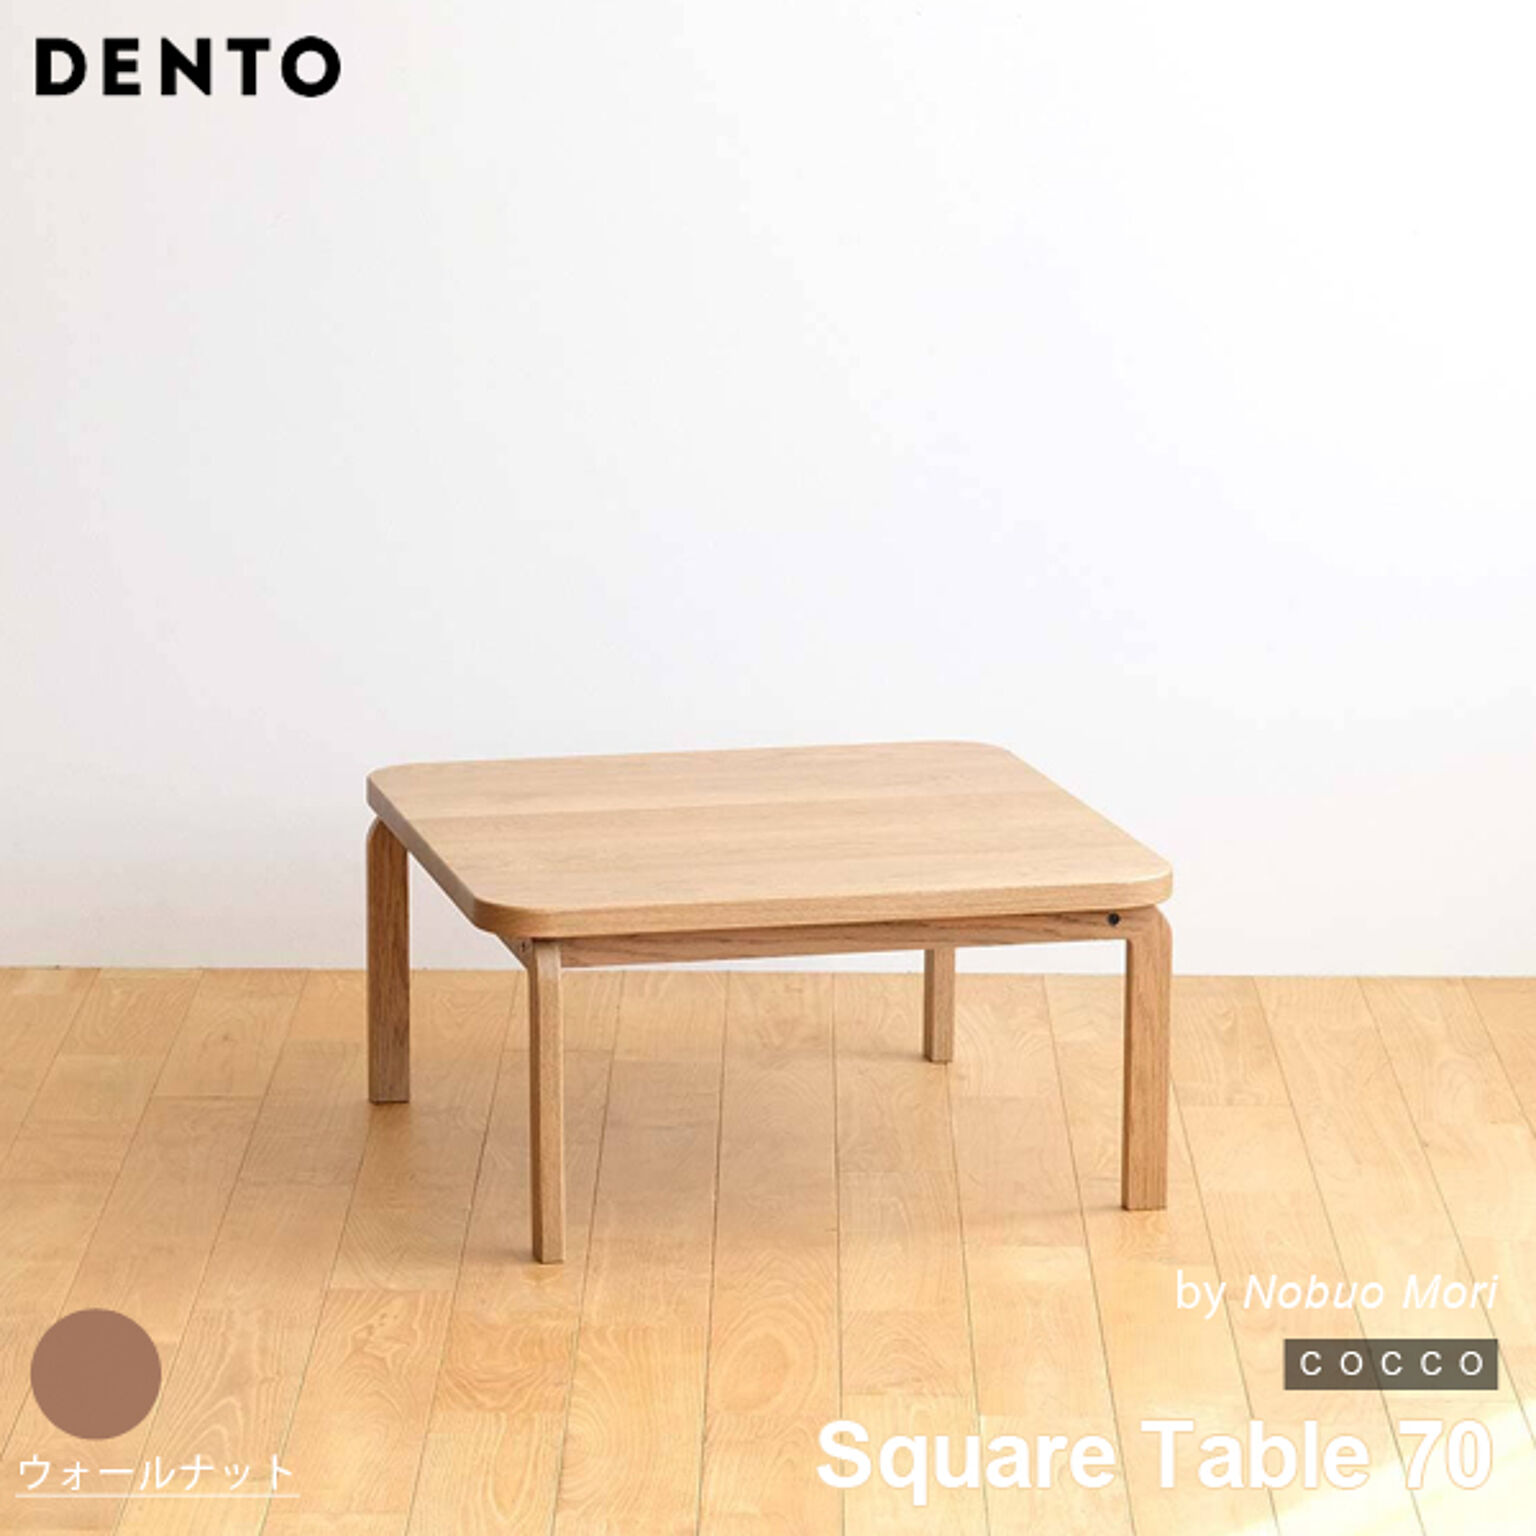 テーブル コーヒーテーブル ローテーブル 木製 四角 正方形 2人用 COCCO Square Table 70 コッコ 木製 スタイリッシュ 北欧 日本製 